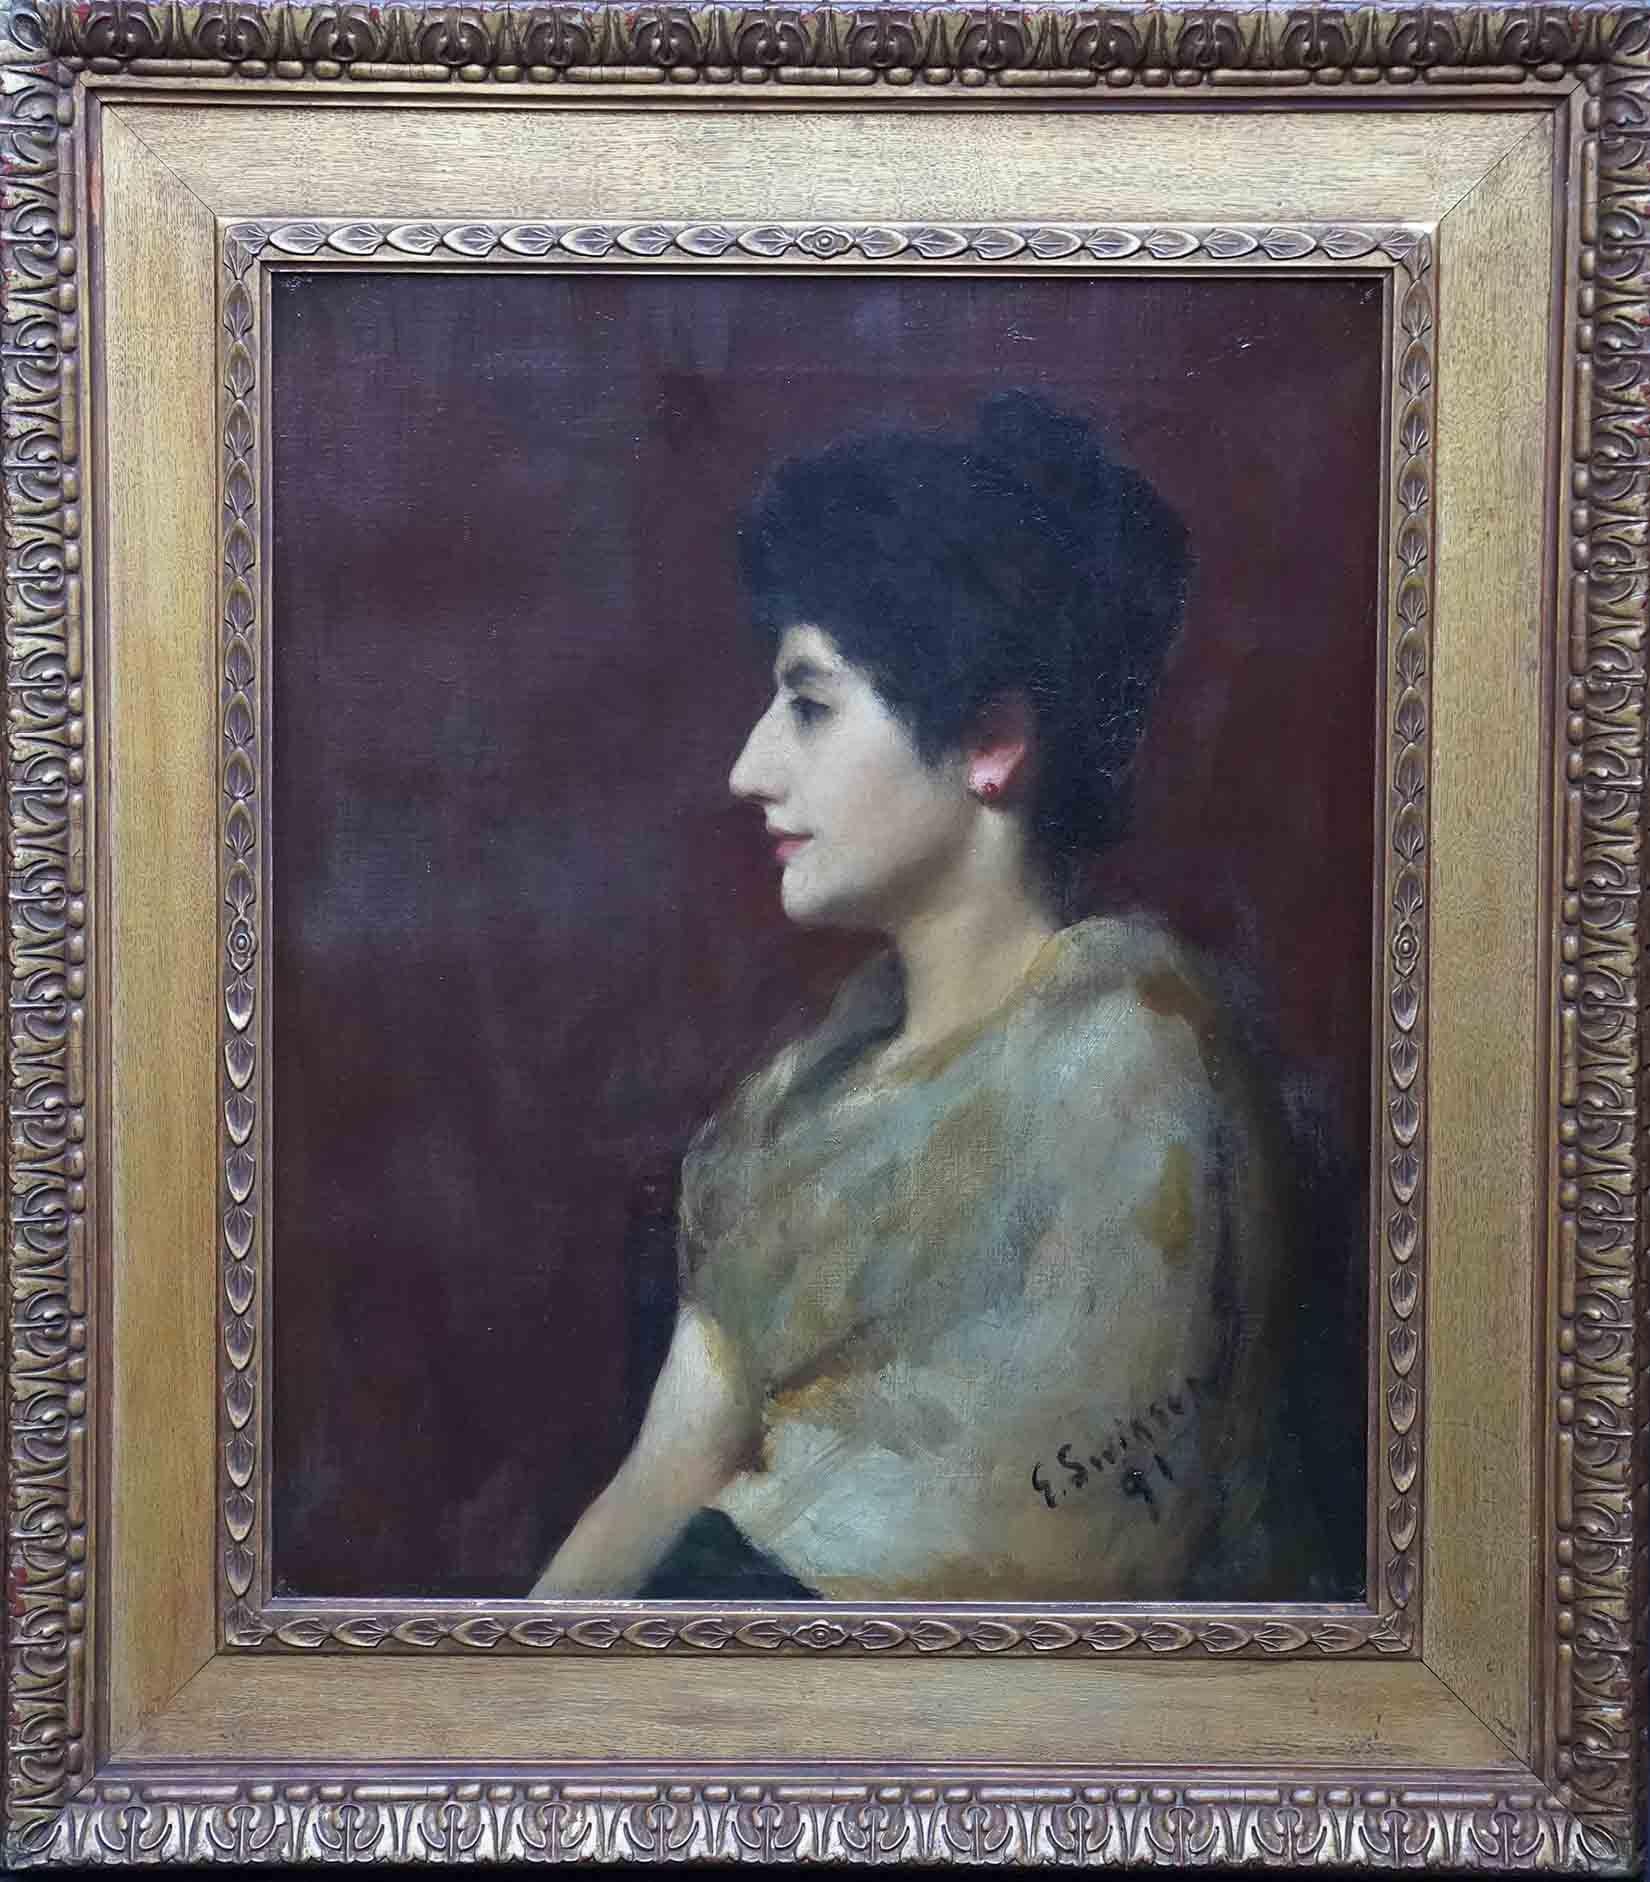 Edward Spilsbury Swinson Portrait Painting - Portrait of a Lady - British 19th century art portrait oil painting